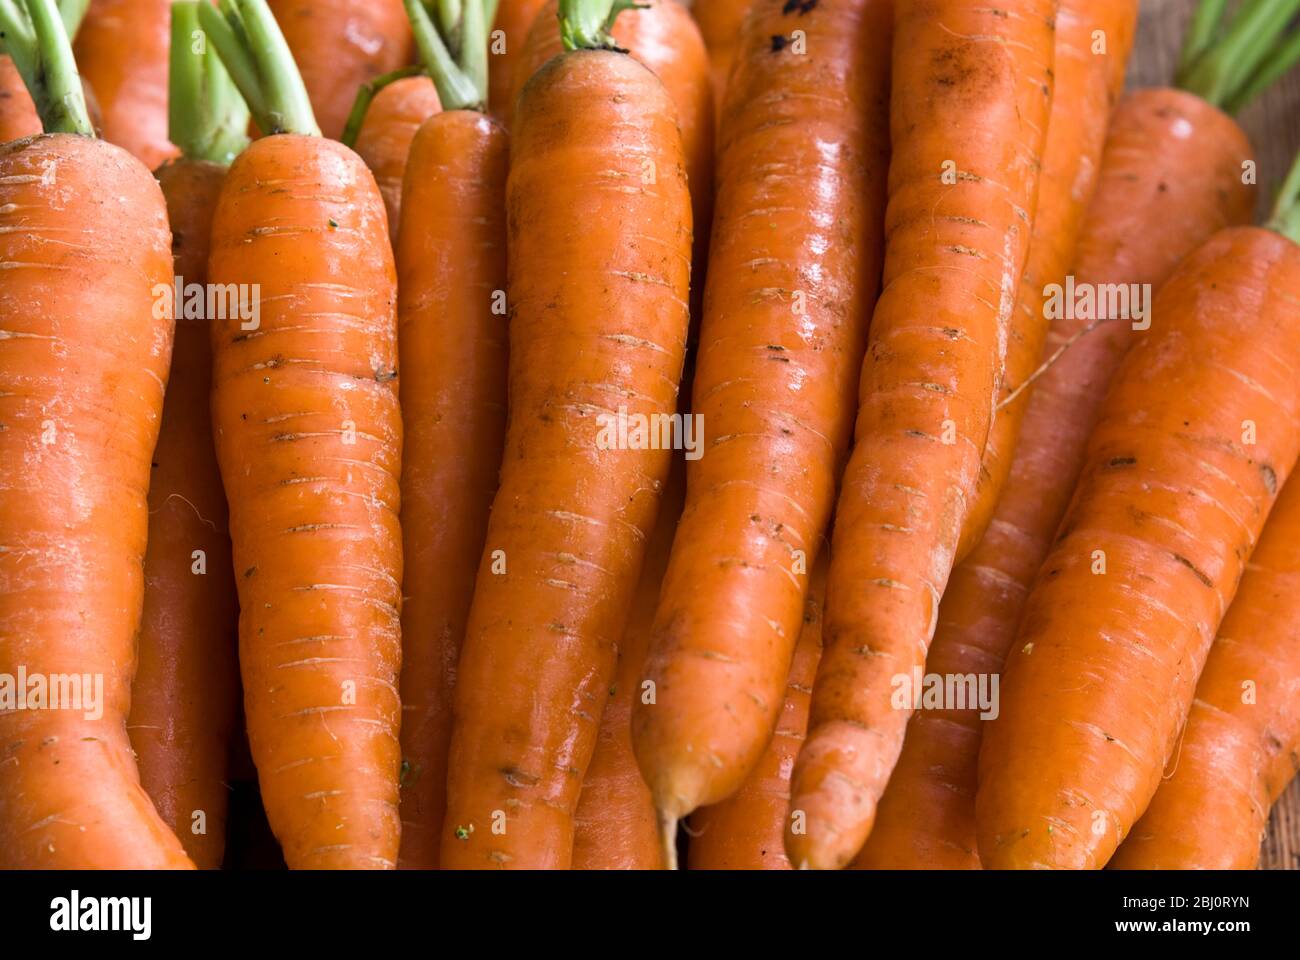 Stapel roher frischer Karotten mit grünen Spitzen - Stockfoto